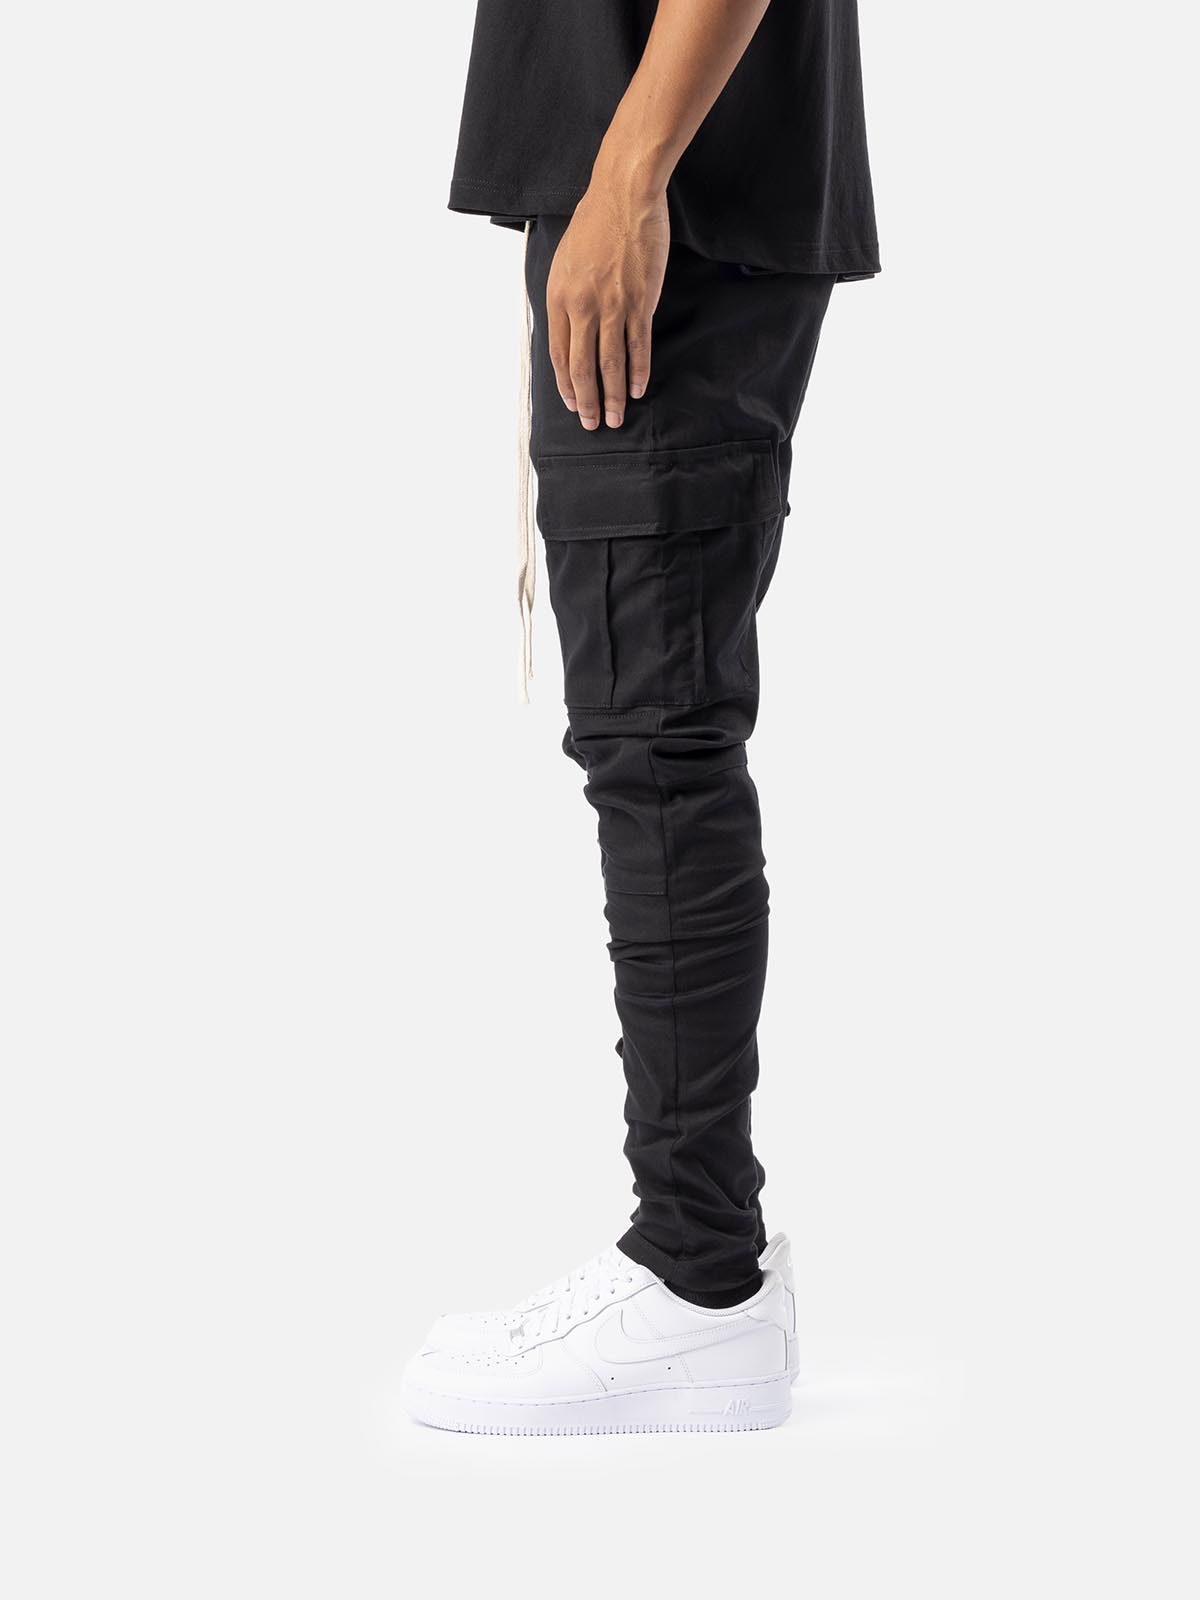 BLACKTAILOR カーゴパンツ ブラックテイラー V1 CARGO ジョガーパンツ ストリート 韓国 ファッション 裾ジップ ストレッチ メンズ  ユニセックス [衣類] | WILLS